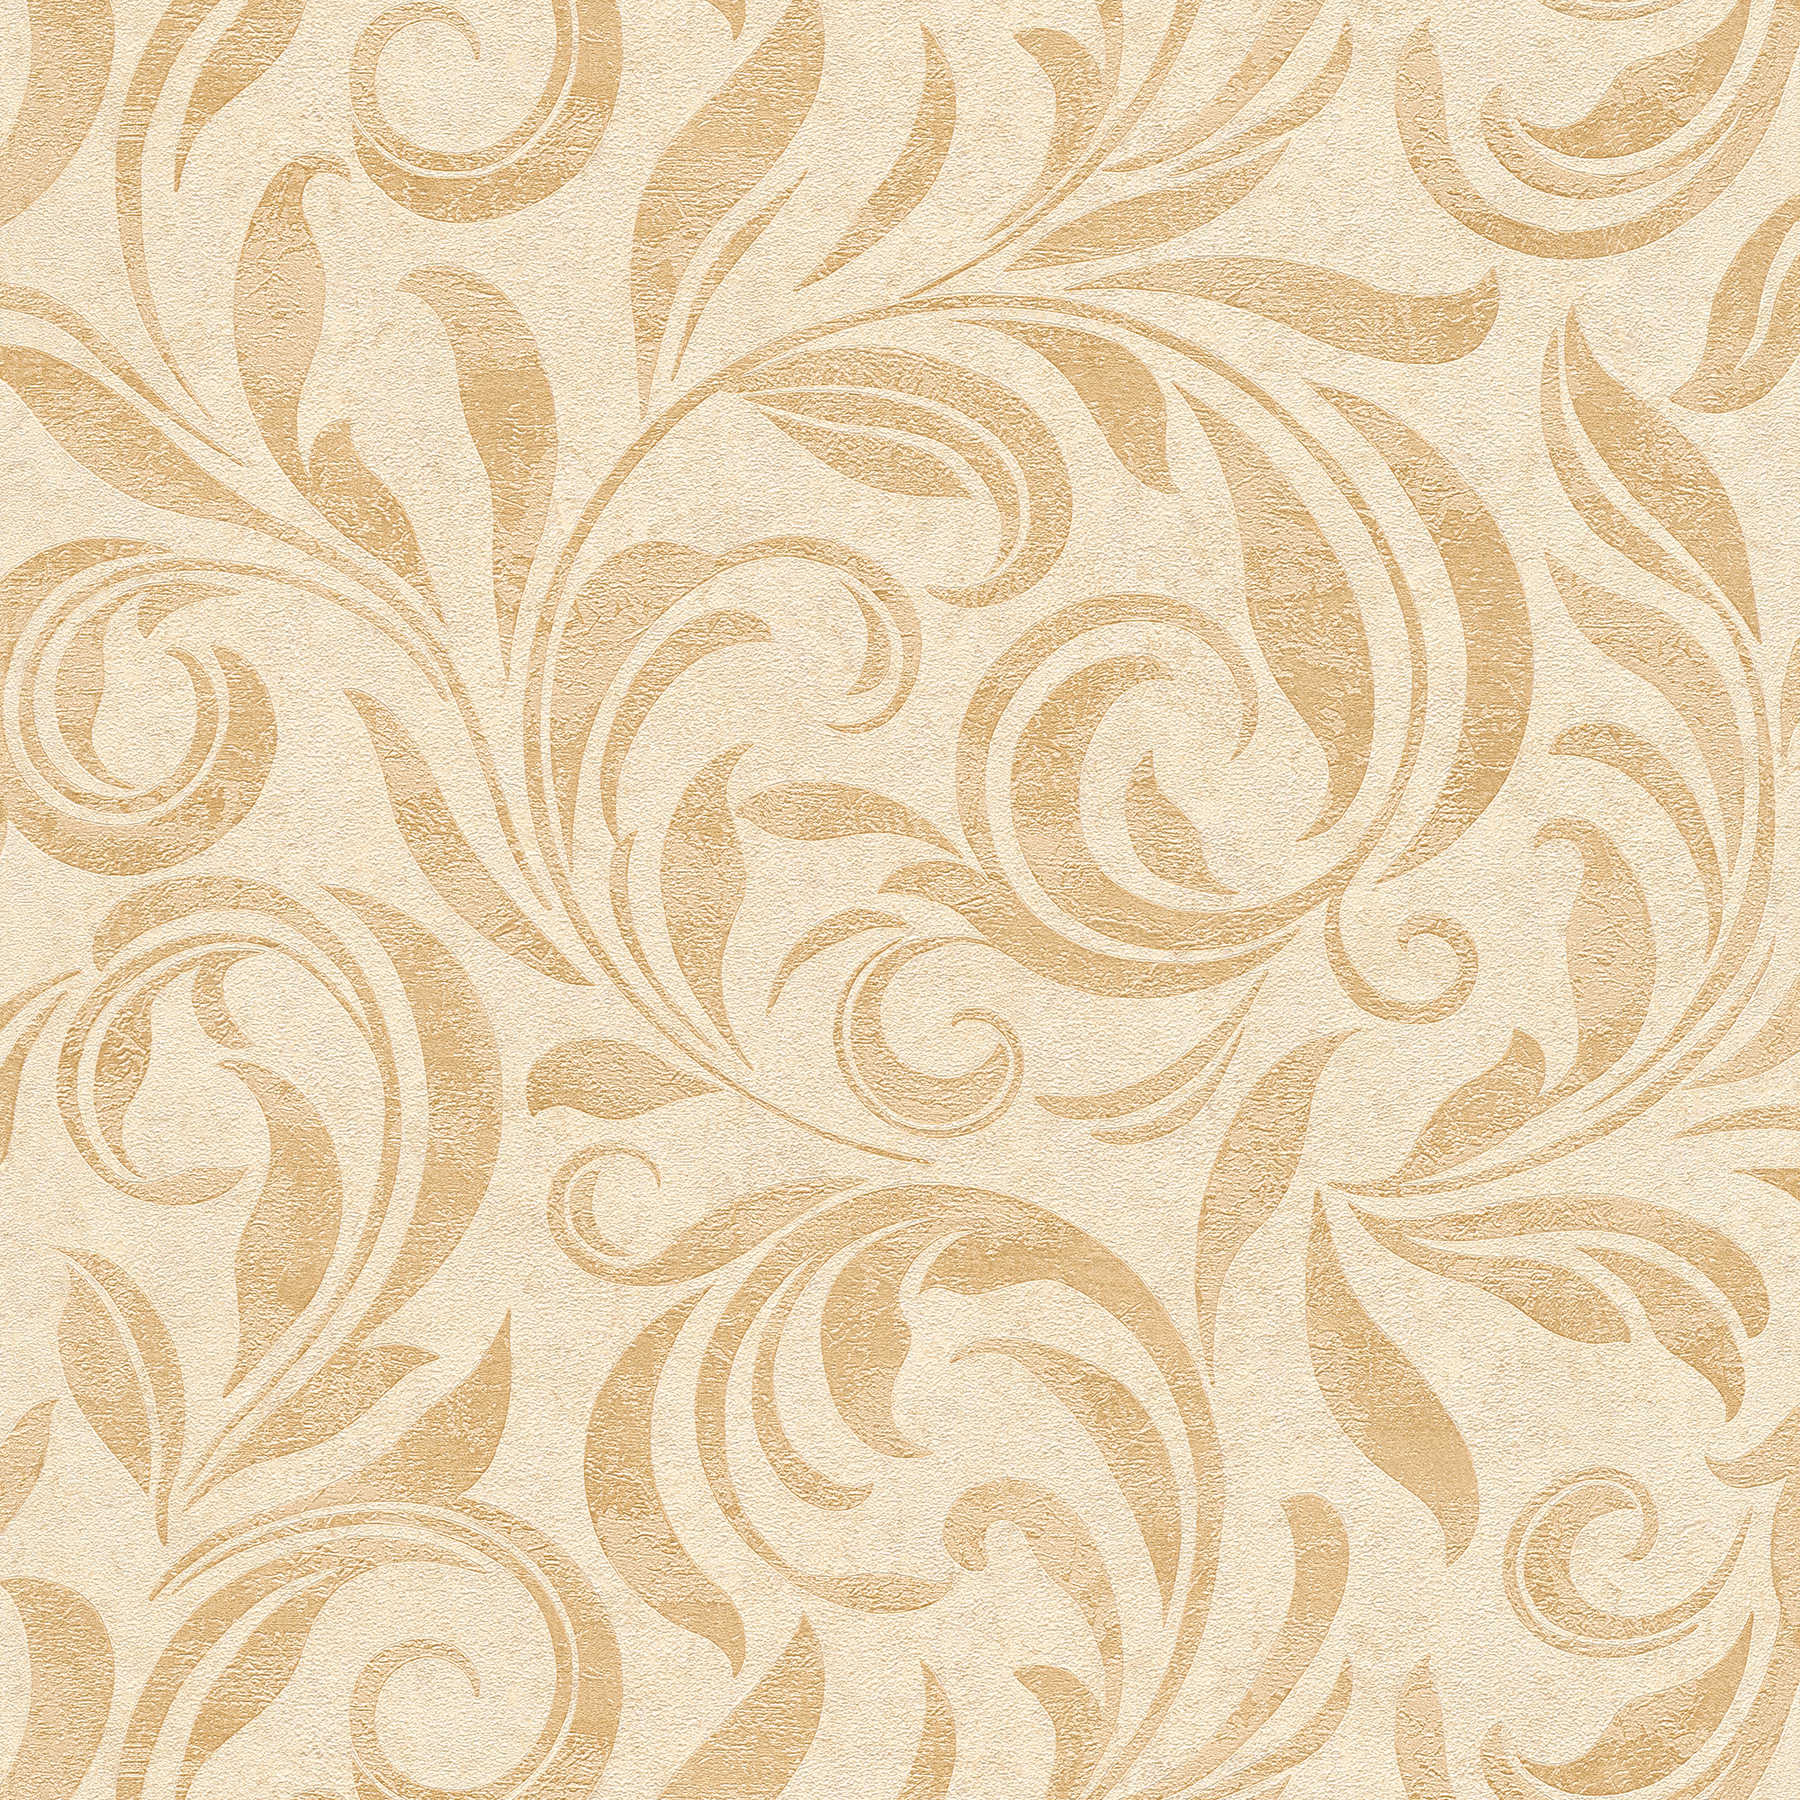 behang metallic patroon met structuur & kleur arceringen - beige, crème, metallic
